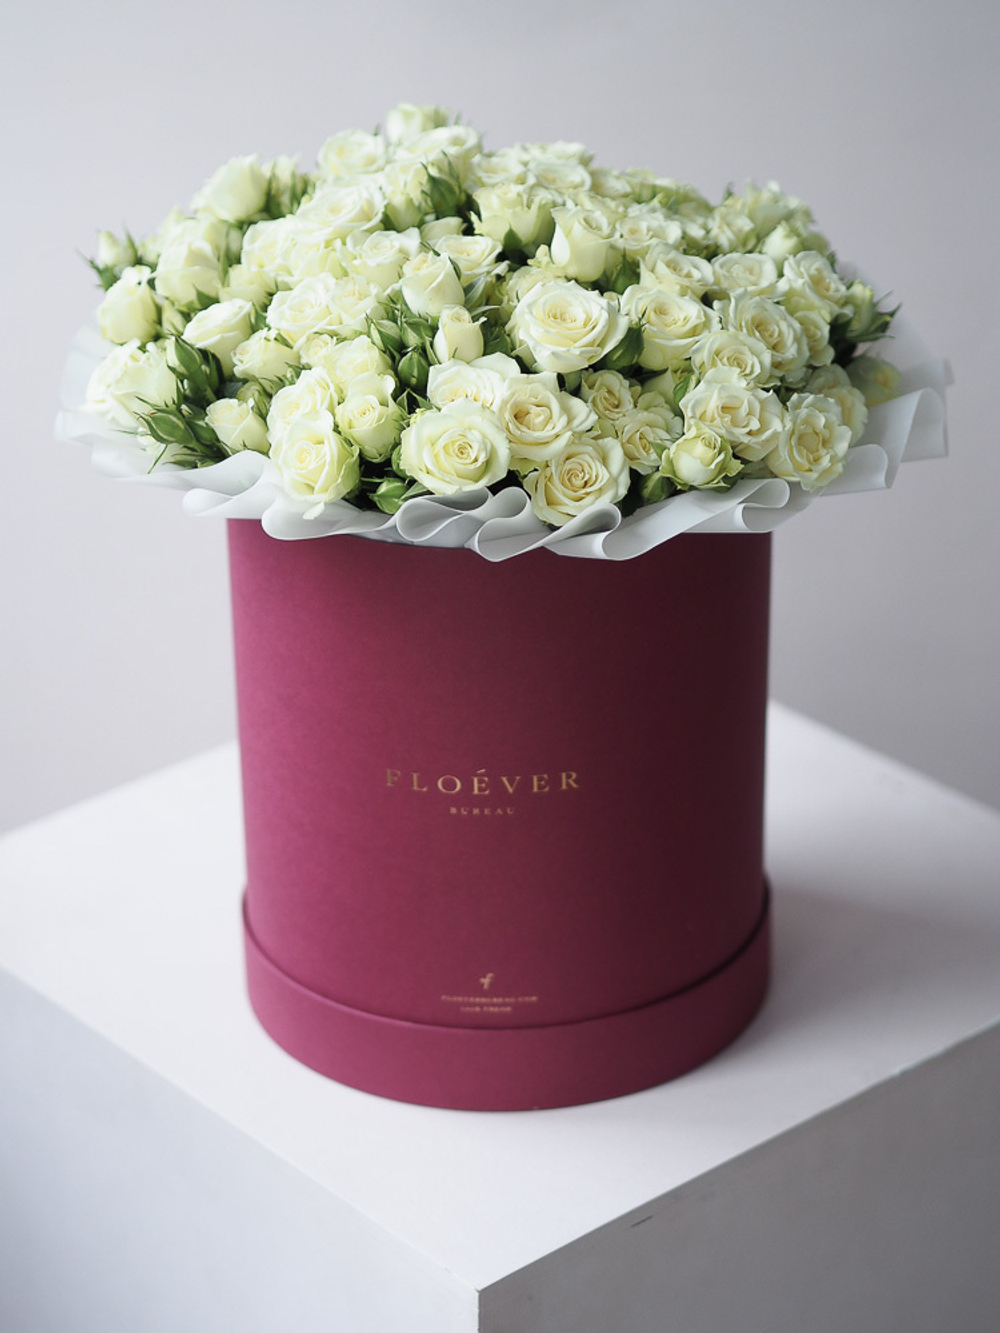 Кустовые розы Сноуфлейк в коробке XL